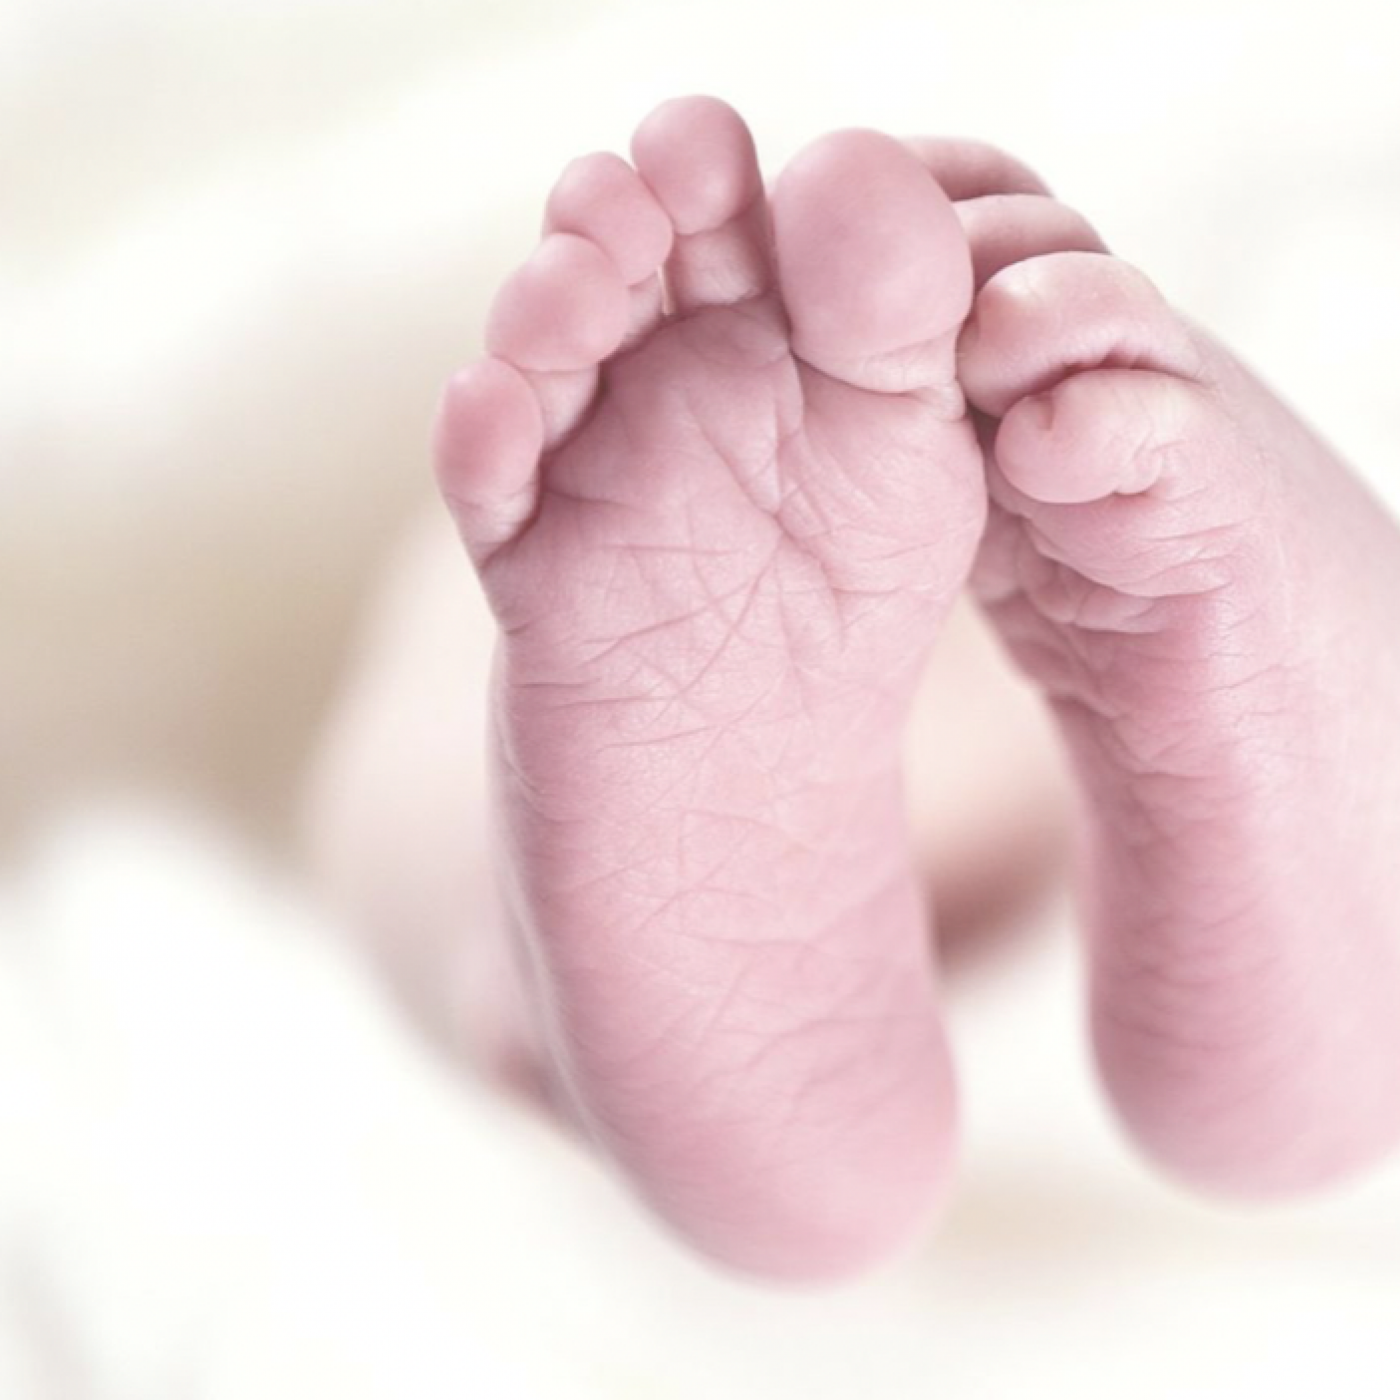 Le Journal des Bonnes Nouvelles : Pourquoi les bébés naissent principalement la nuit ?